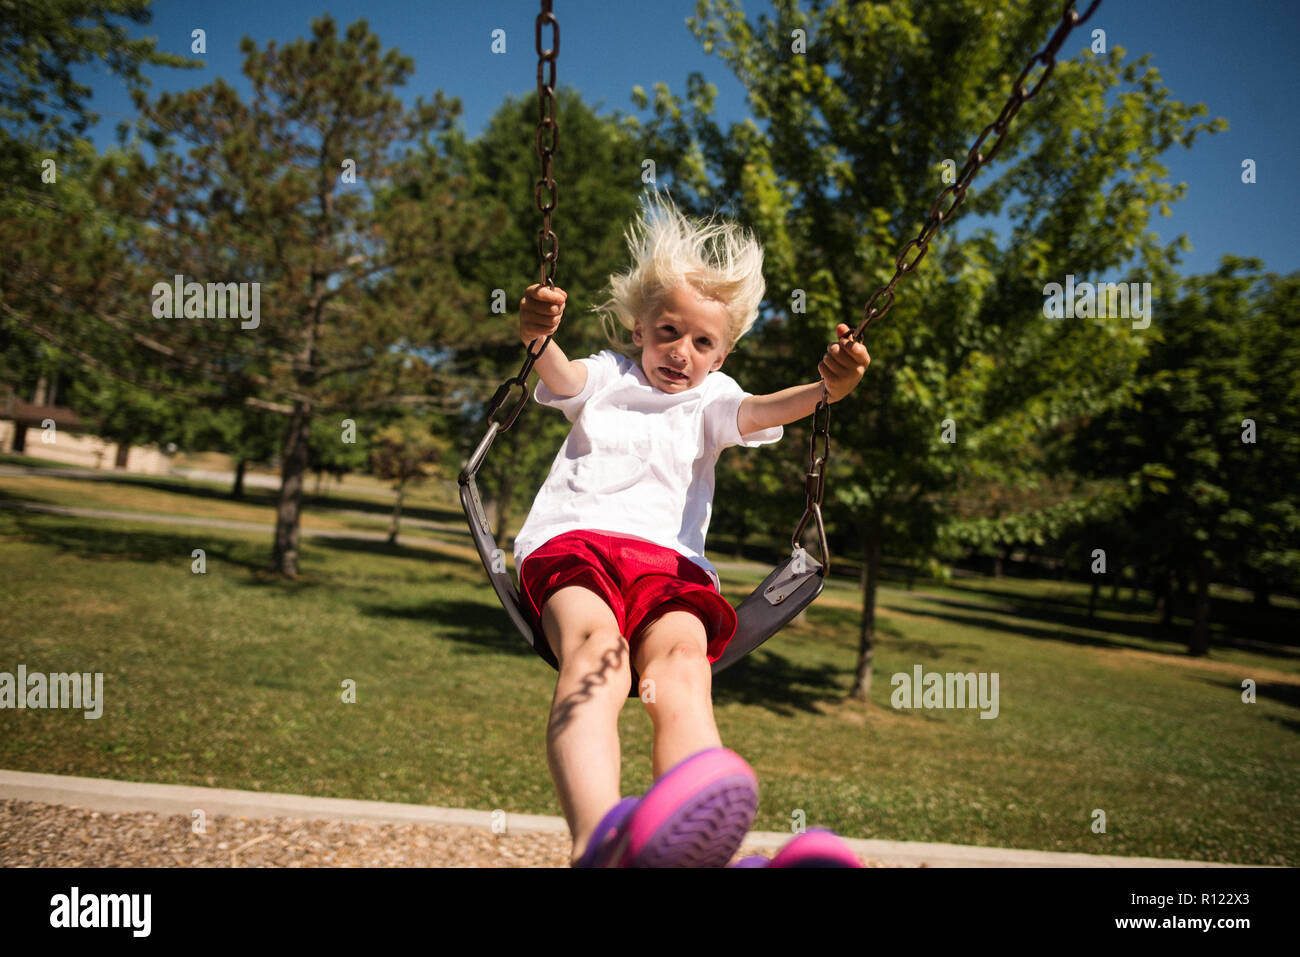 Boy on swing in park Stock Photo